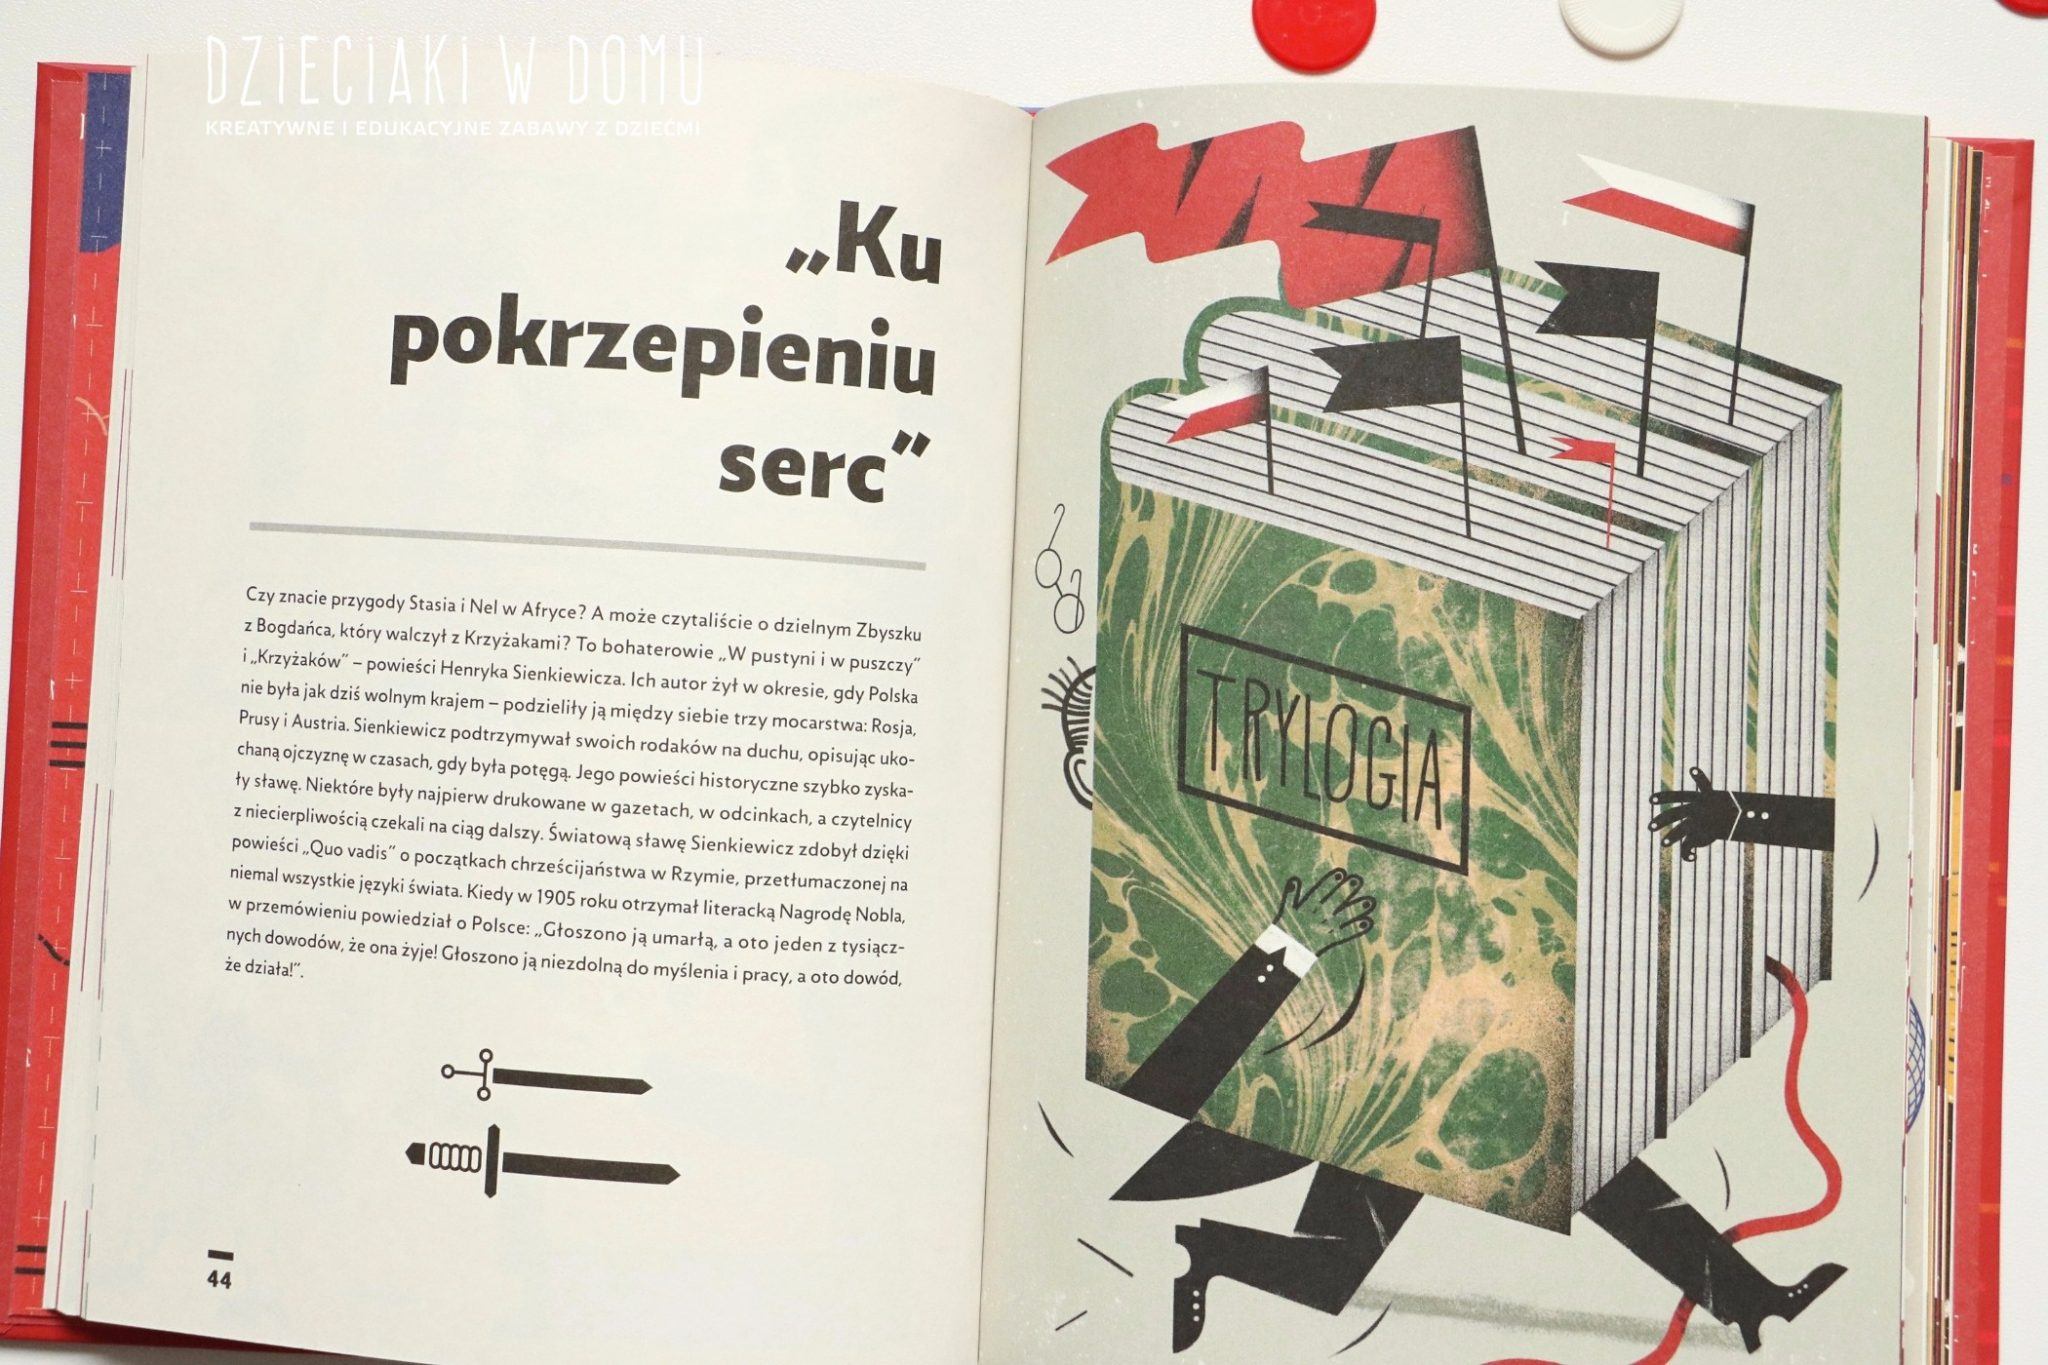 ksiazki patriotyczne dla dzieci - polska, symbole narodowe, świeta narodowe